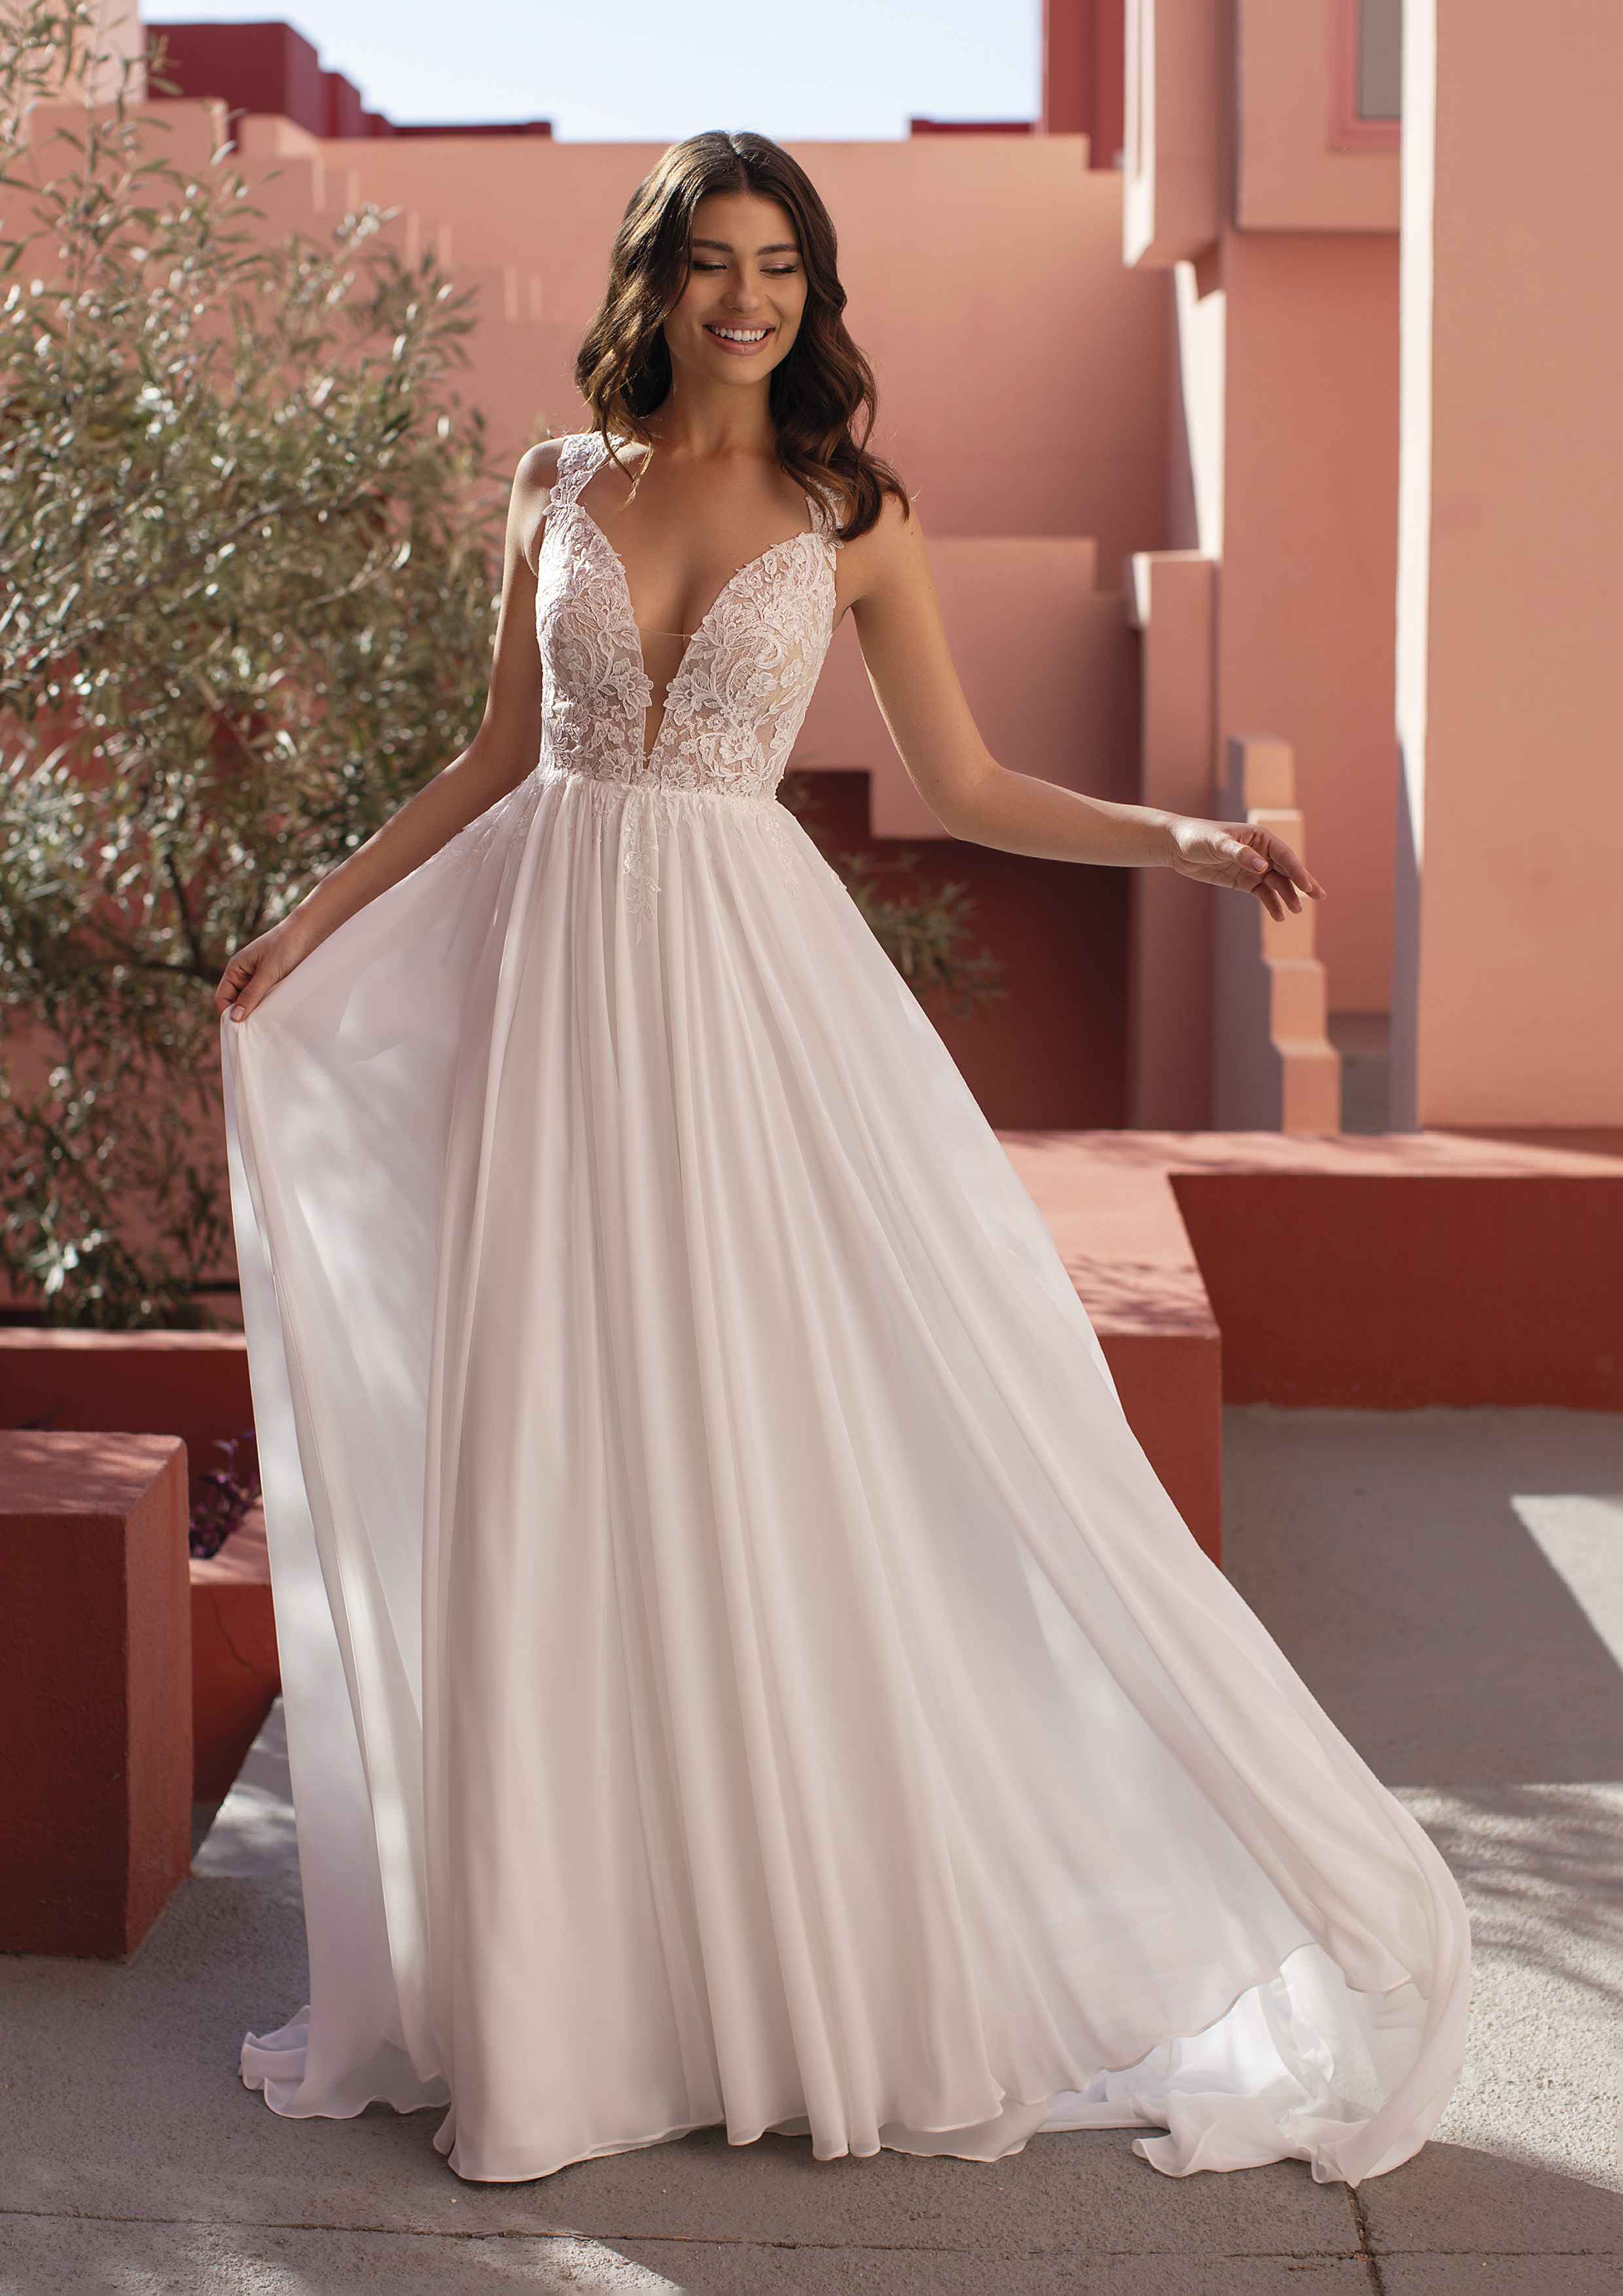 Modell im Hochzeitskleid